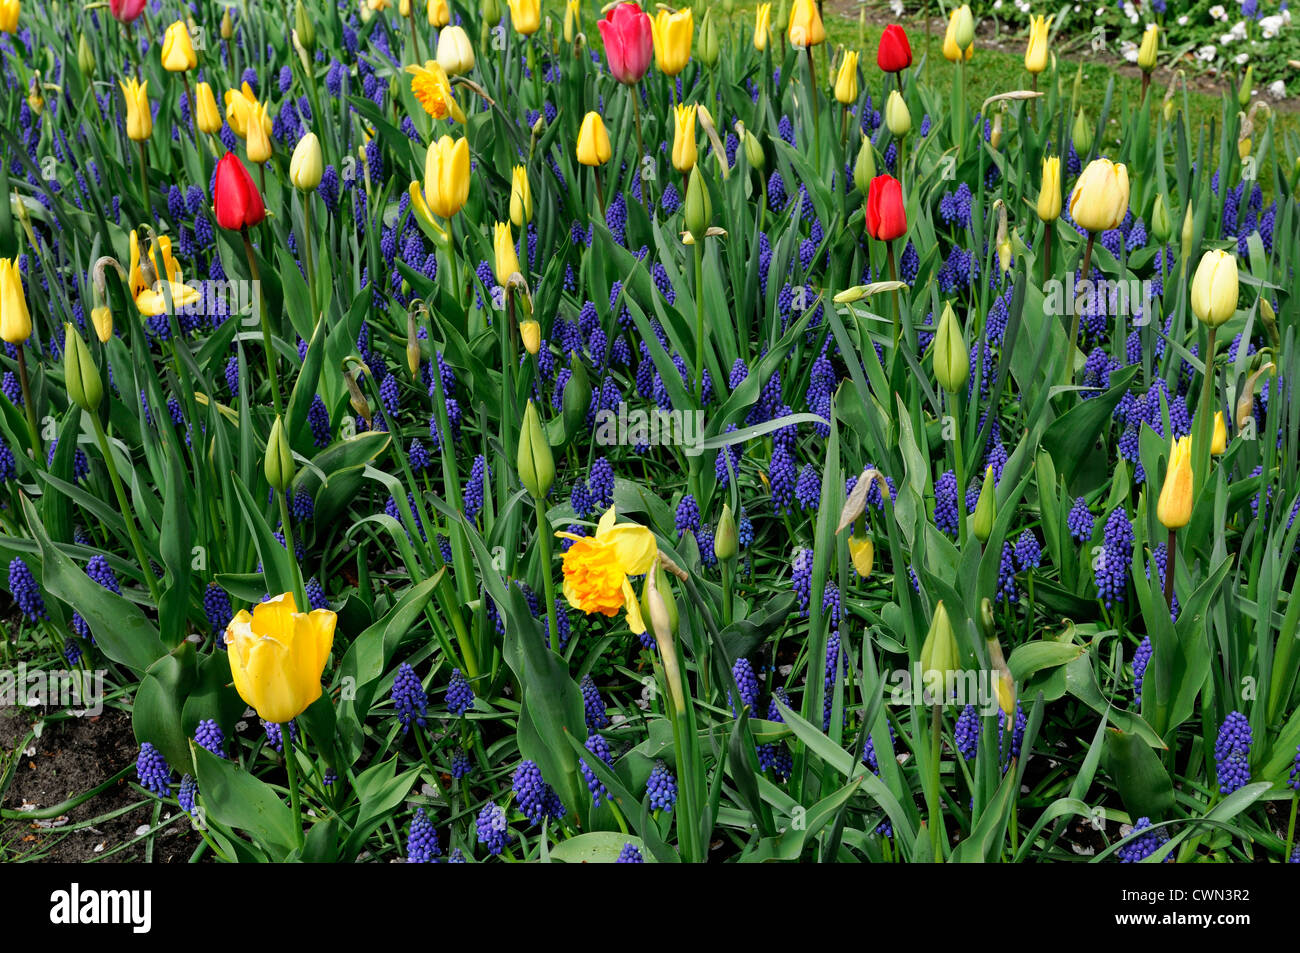 Mischbett Grenze Frühling blühenden Blumenzwiebeln lila weiße gelbe Farbe Combo Farbkombination mischen gemischte Pflanzung Display Systems Stockfoto